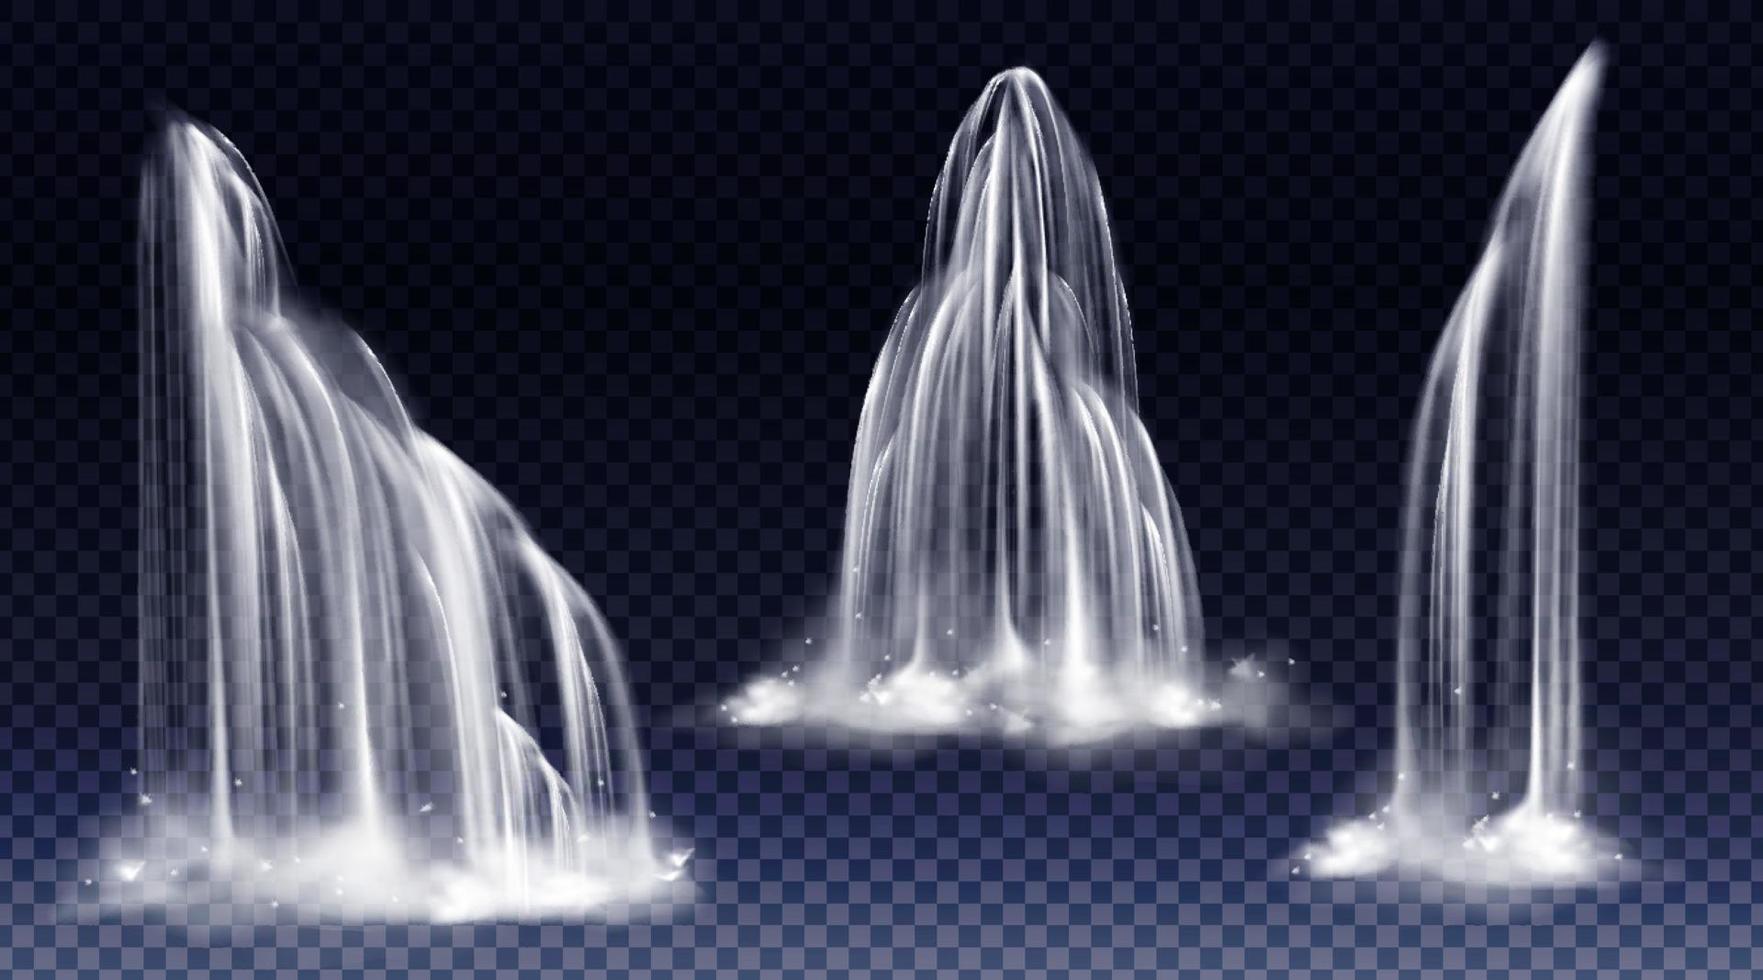 vattenfall kaskad realistisk vatten falla strömmar uppsättning vektor